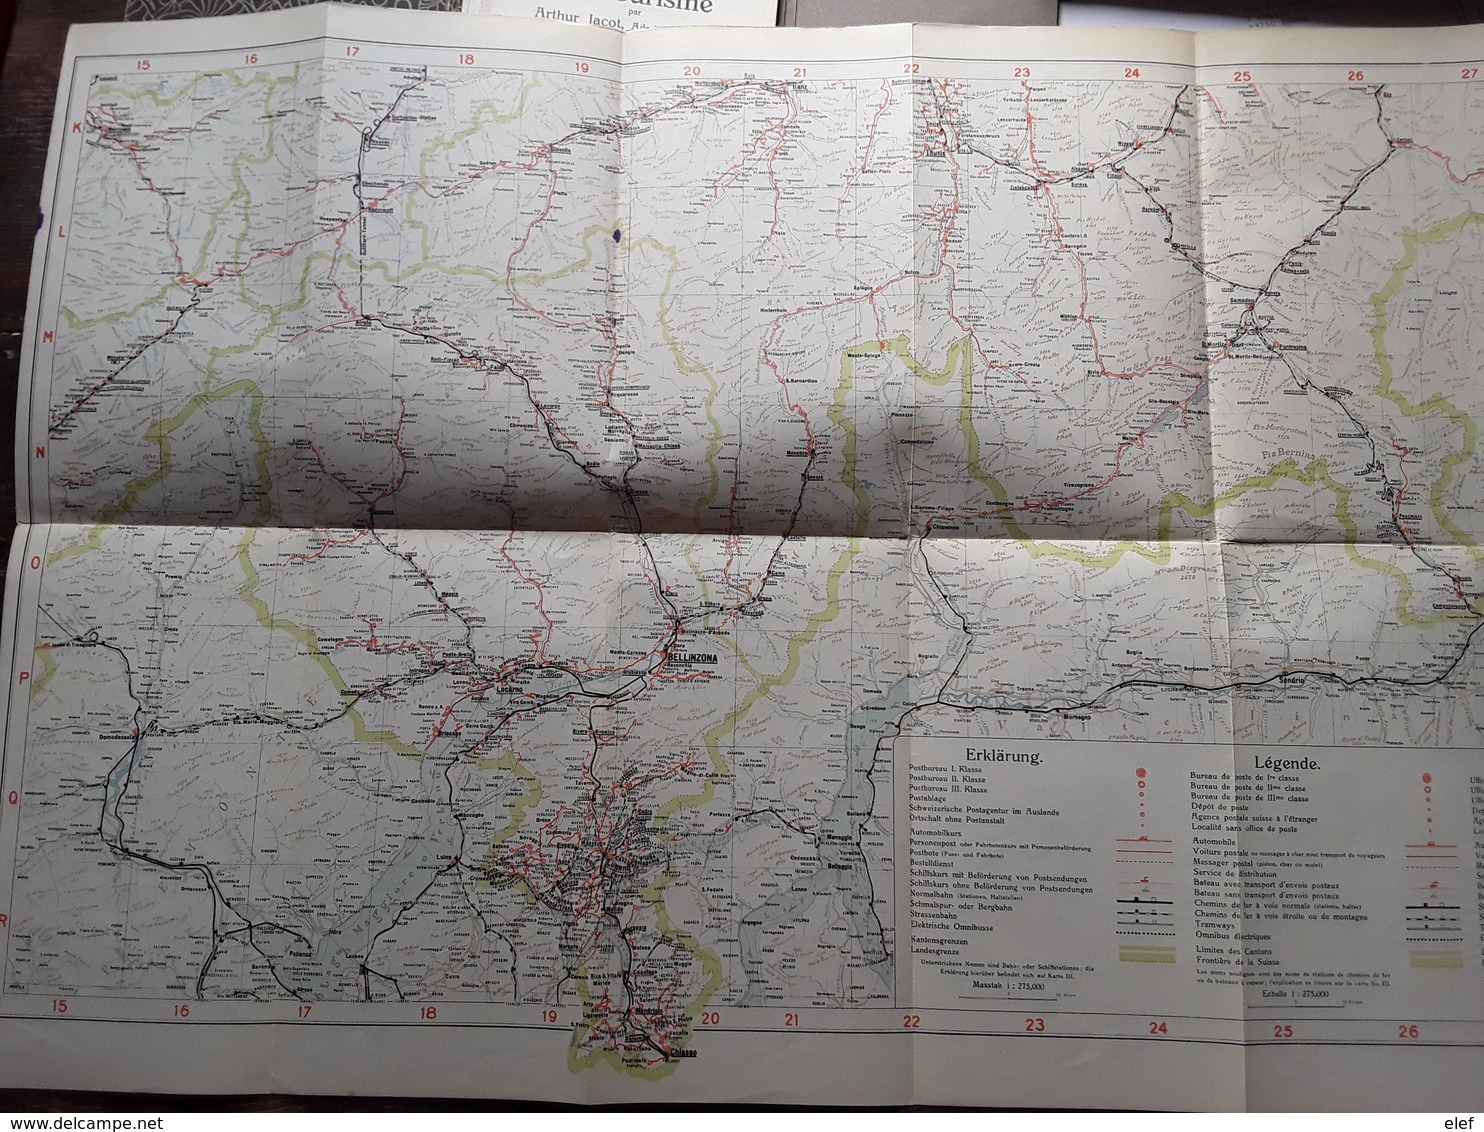 Suisse Guide Cartes Schweizerische Verkehrs Karte ( 4),mit Orts Lexicon Arthur Jacot 1926 Verlag Frey Kratz Zurich, Tb R - Zwitserland